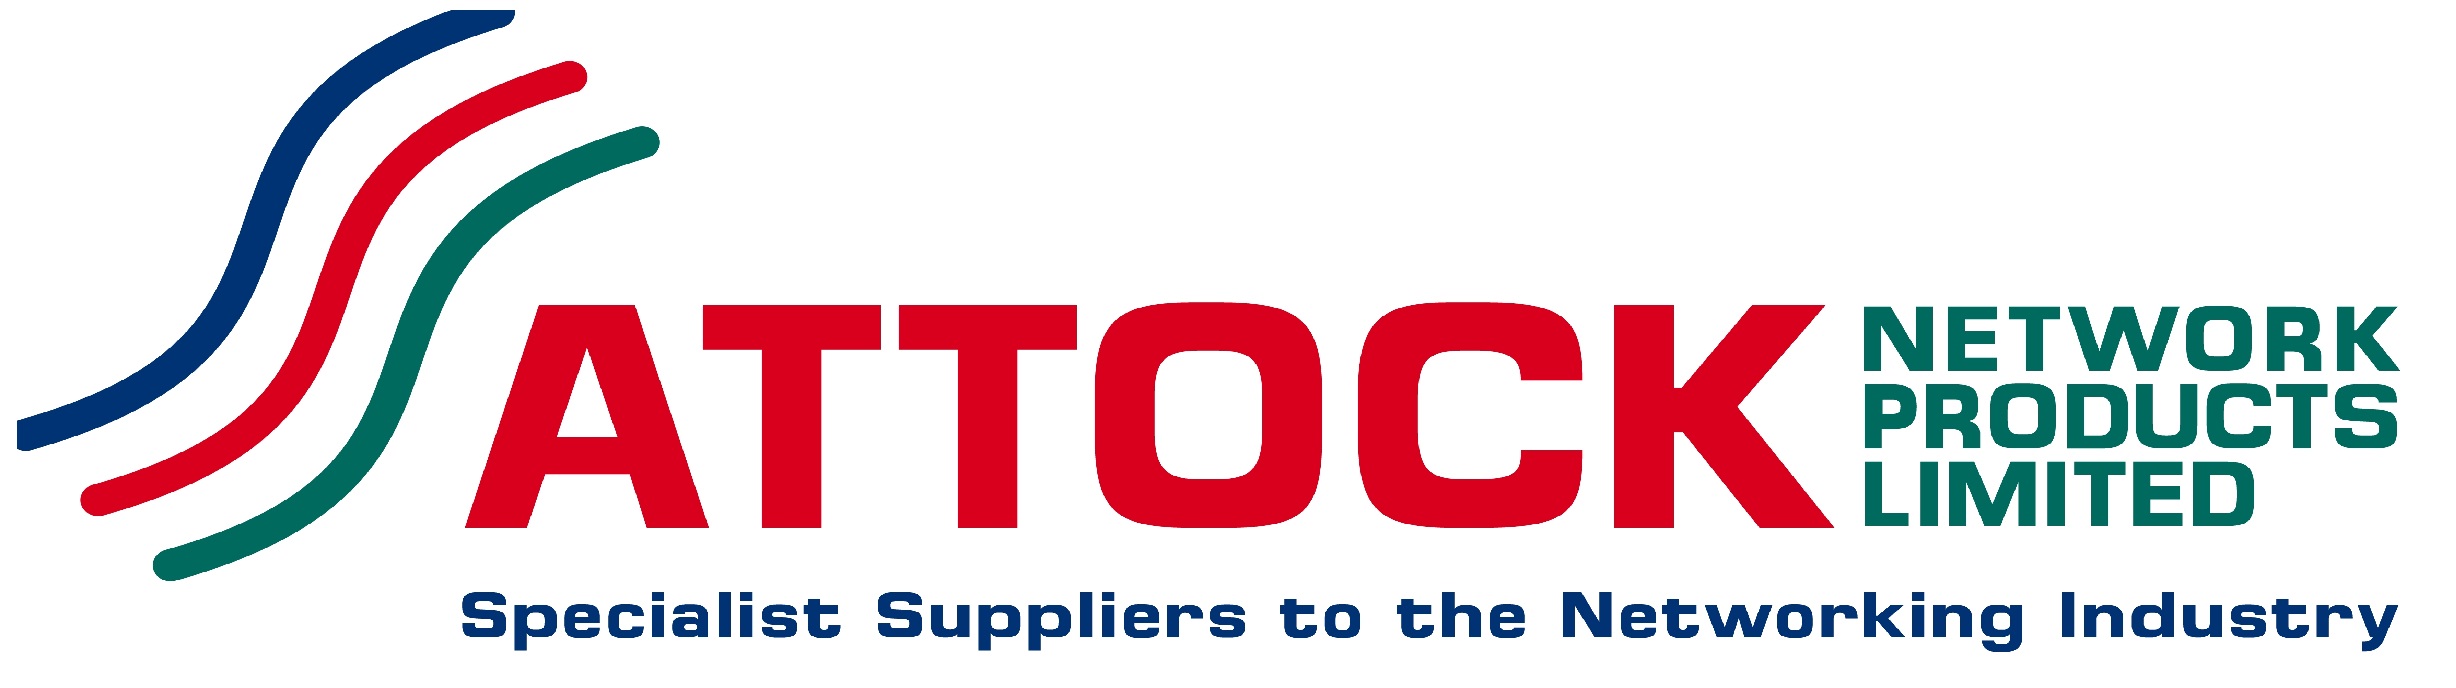 attock network logo